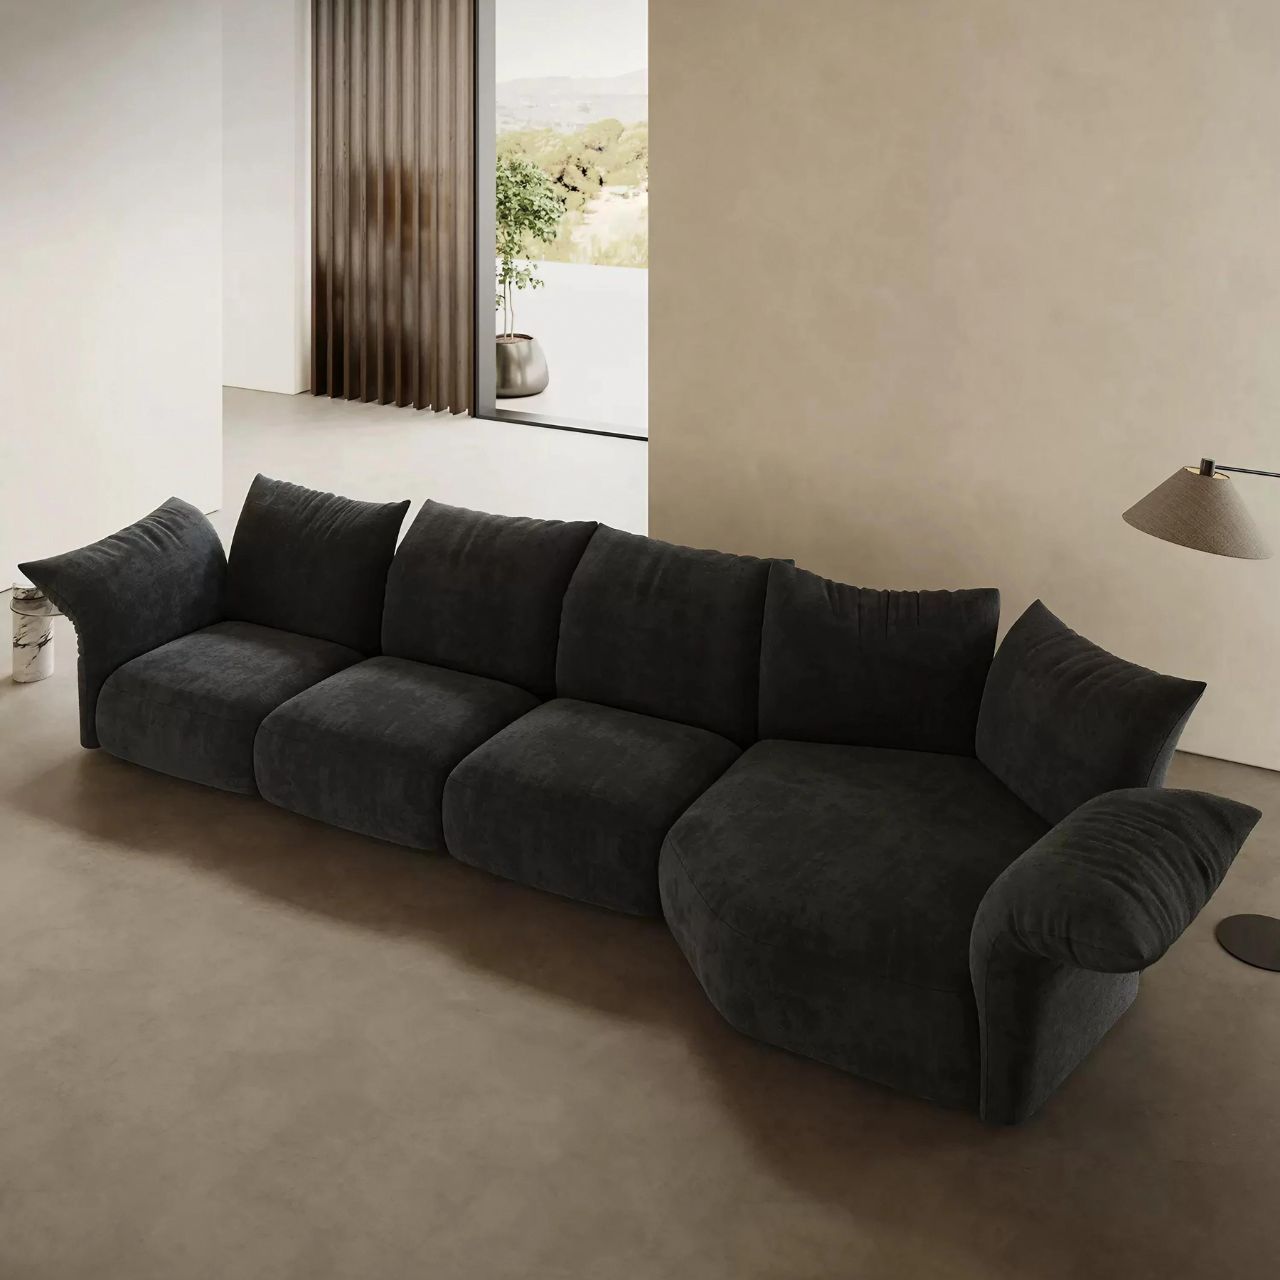 Black Chenille Multi-Seater Sofa in Petal Shape for Modern Living Rooms